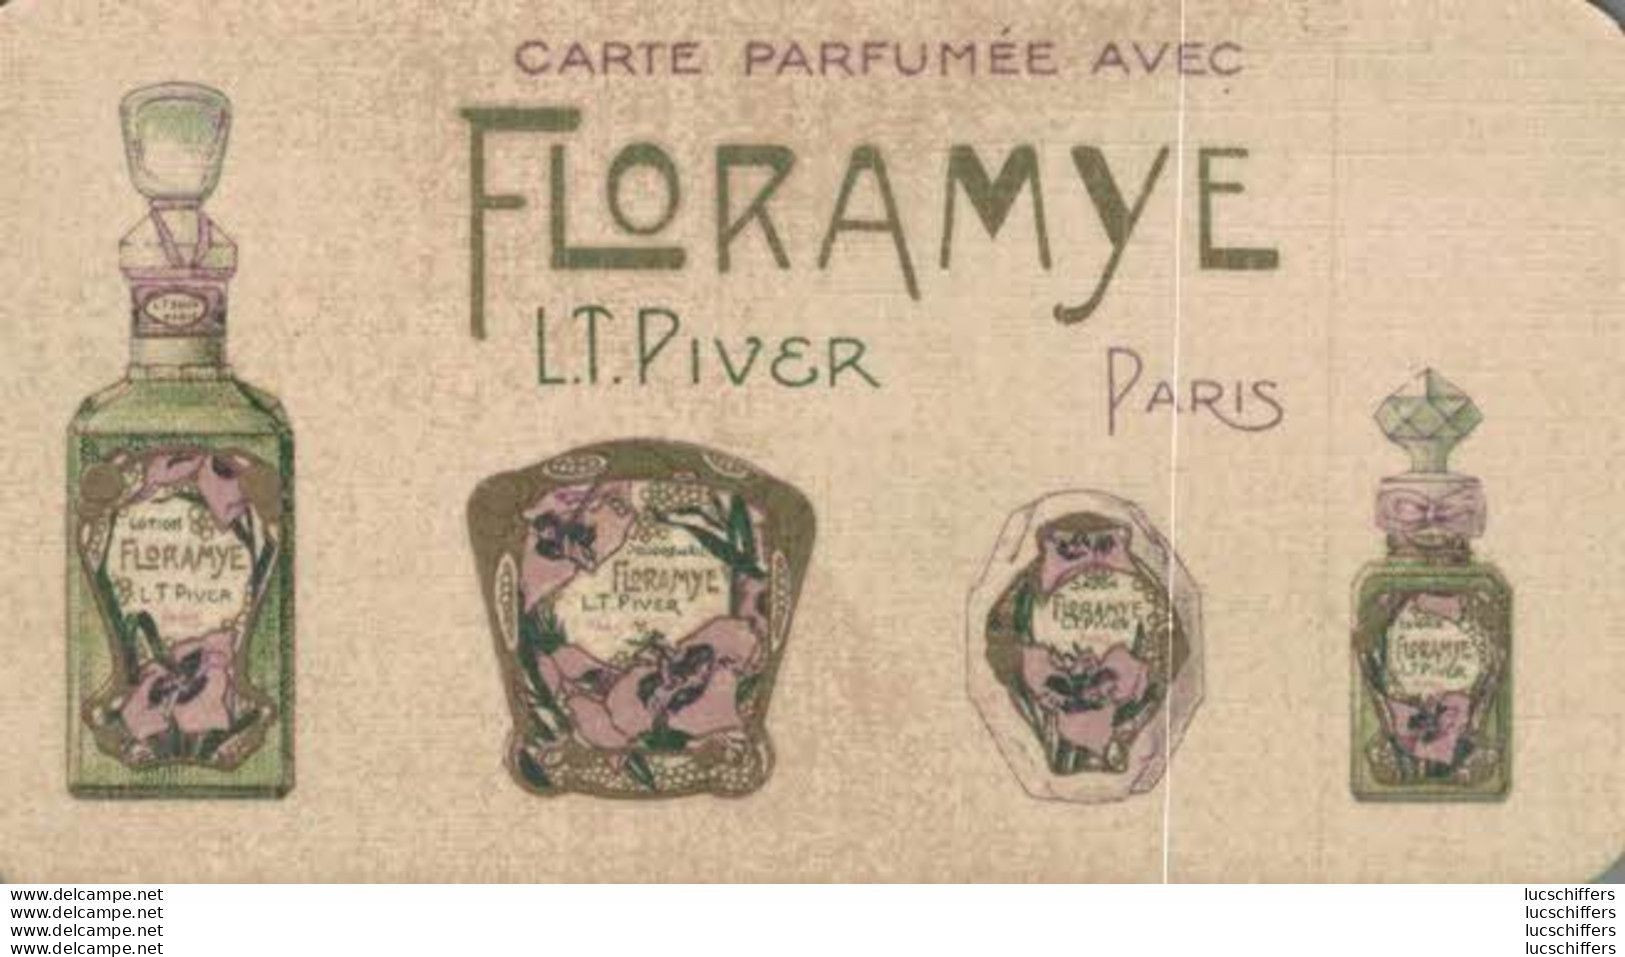 Carte Parfumée Avec Floramye - L.T.Piver - Calendrier 1927 - 2 Scans - Oud (tot 1960)